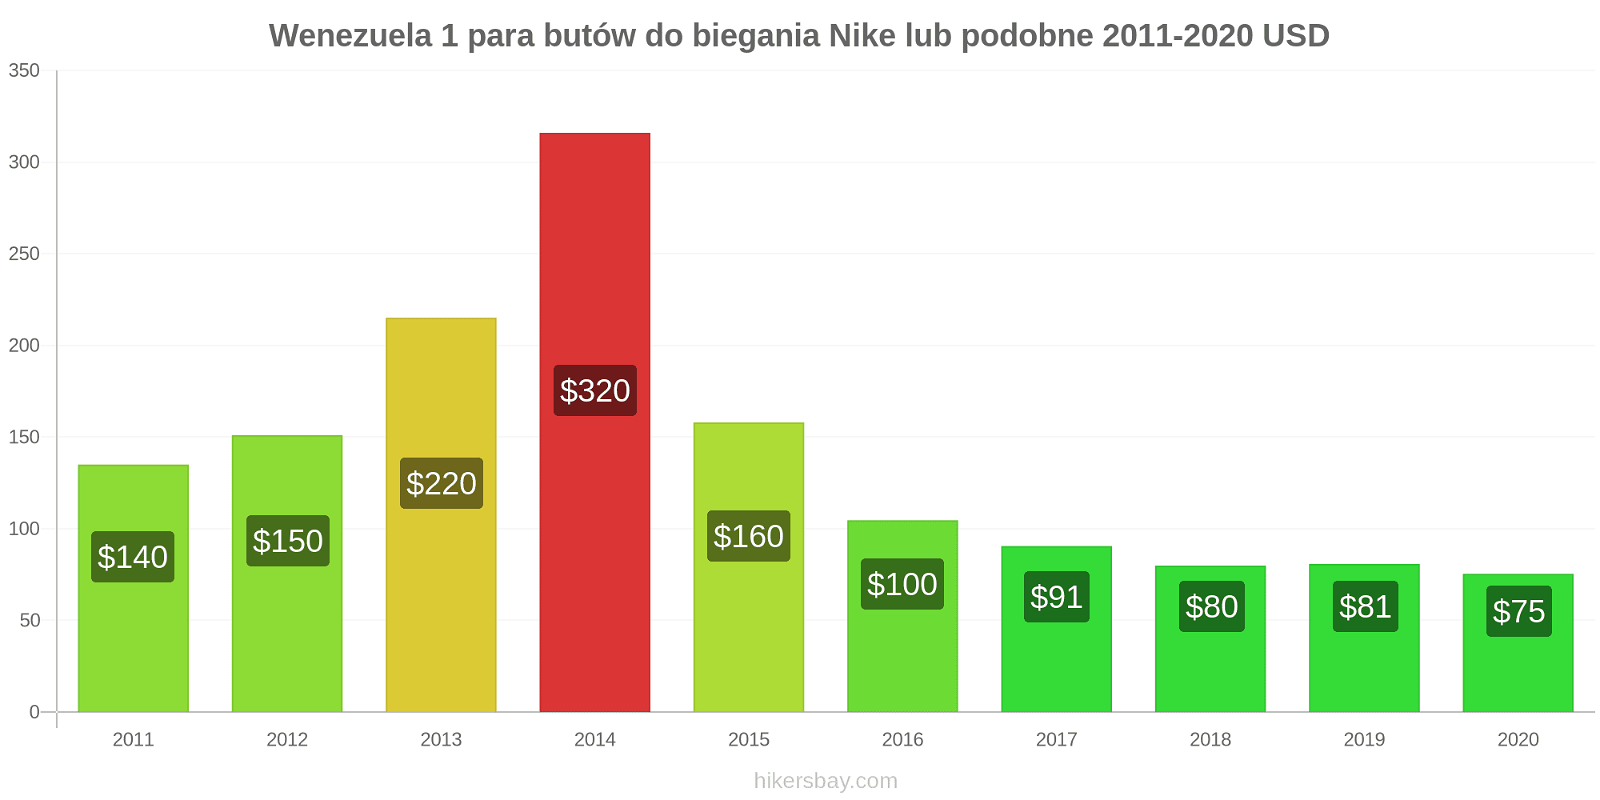 Wenezuela zmiany cen 1 para butów do biegania Nike lub podobne hikersbay.com